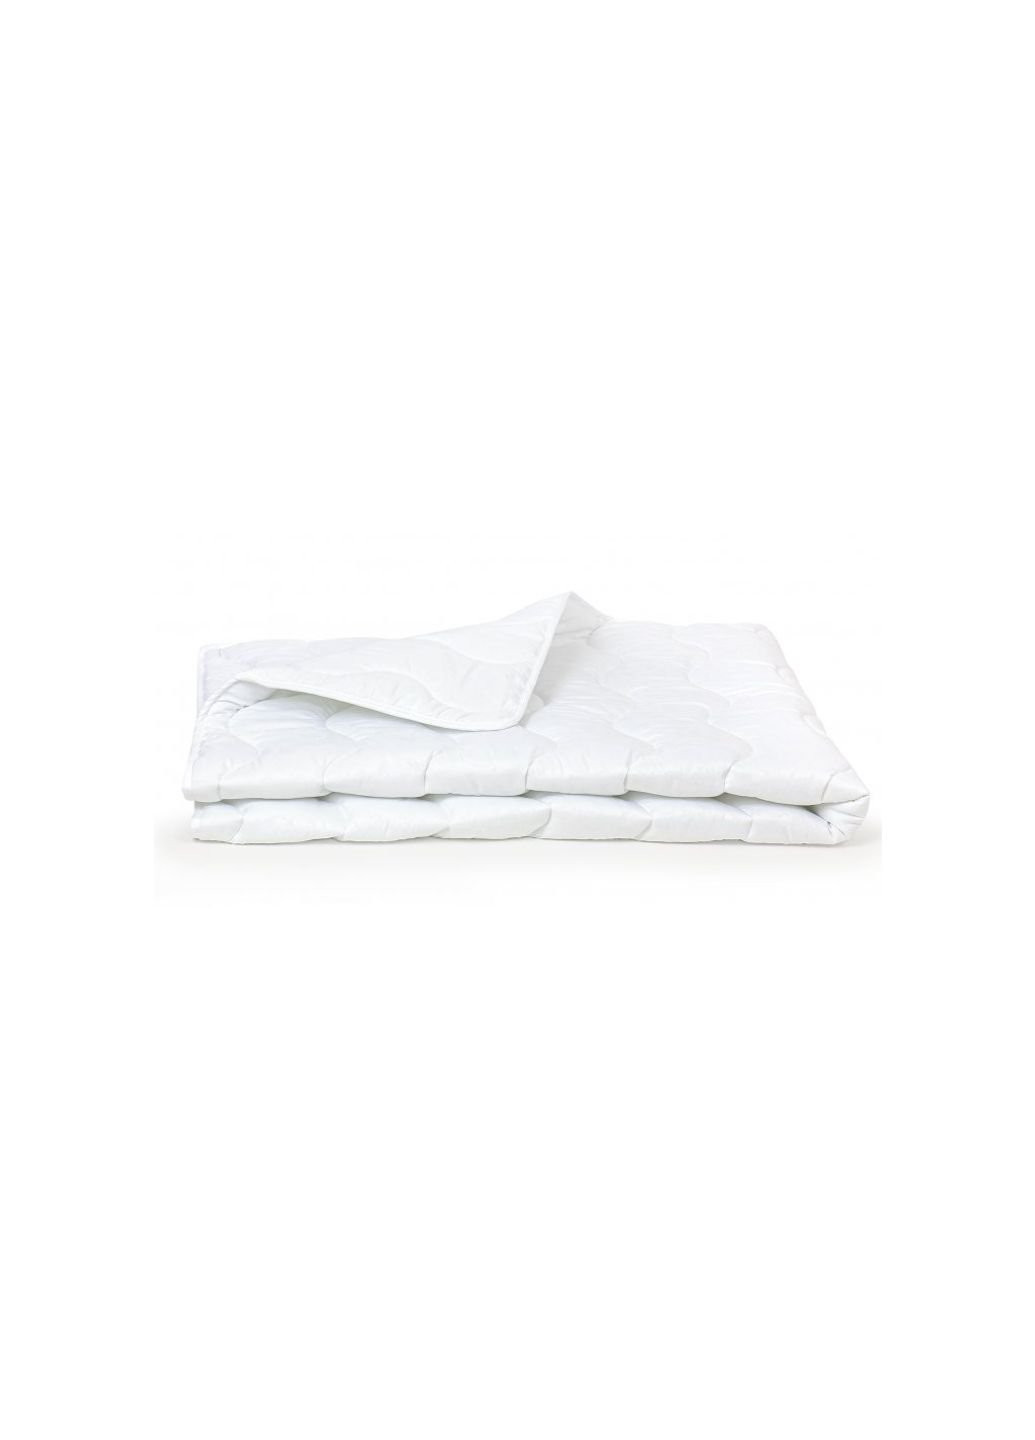 Одеяло шерстяное 1639 Eco Light White 110х140 (2200002653091) Mirson (254083503)